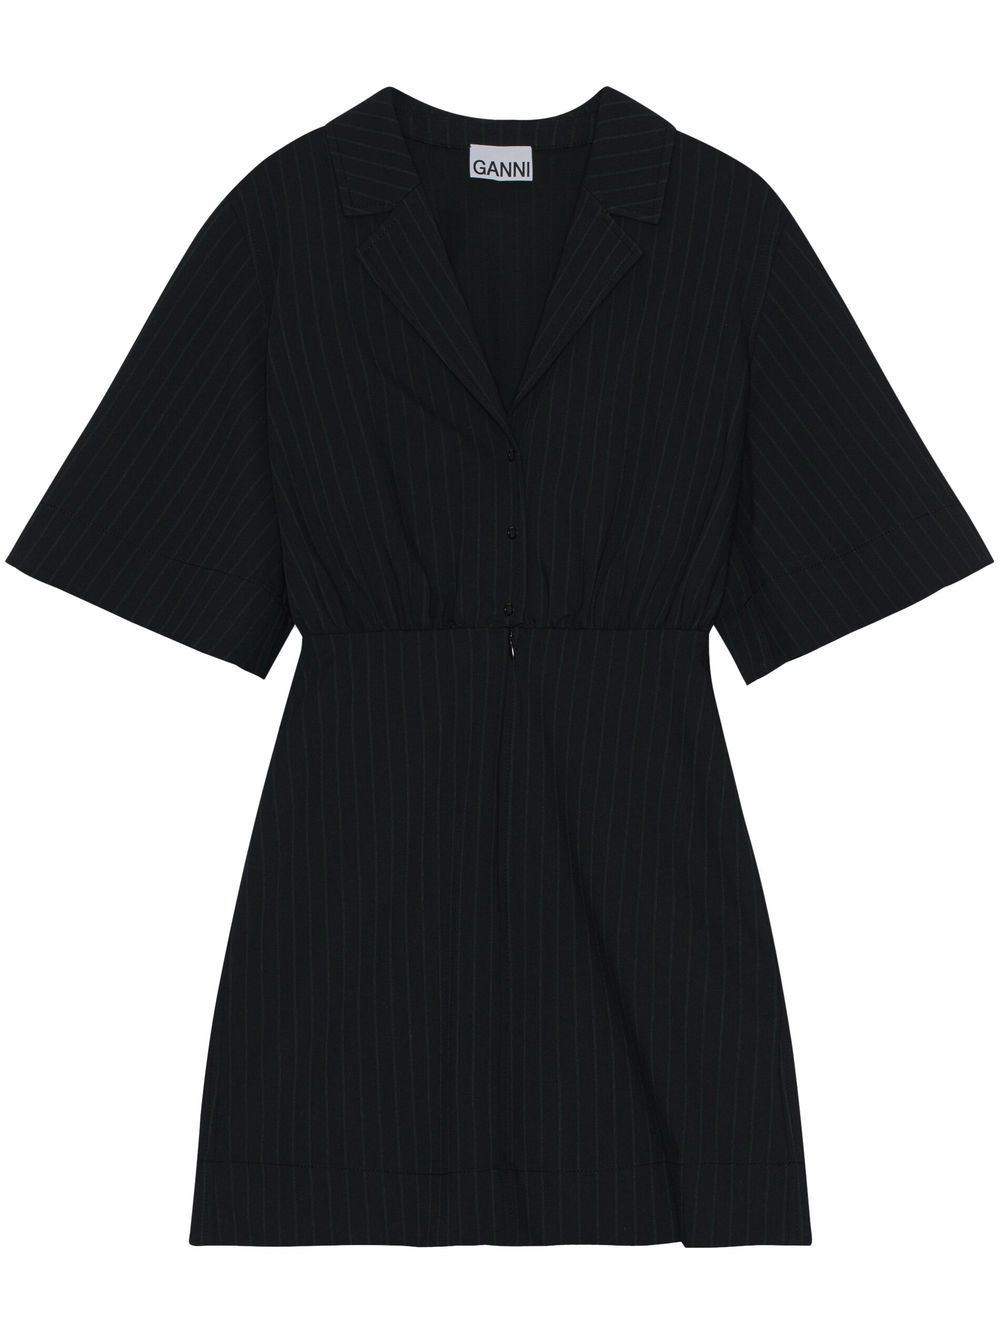 GANNI pinstripe shirt mini dress - Black